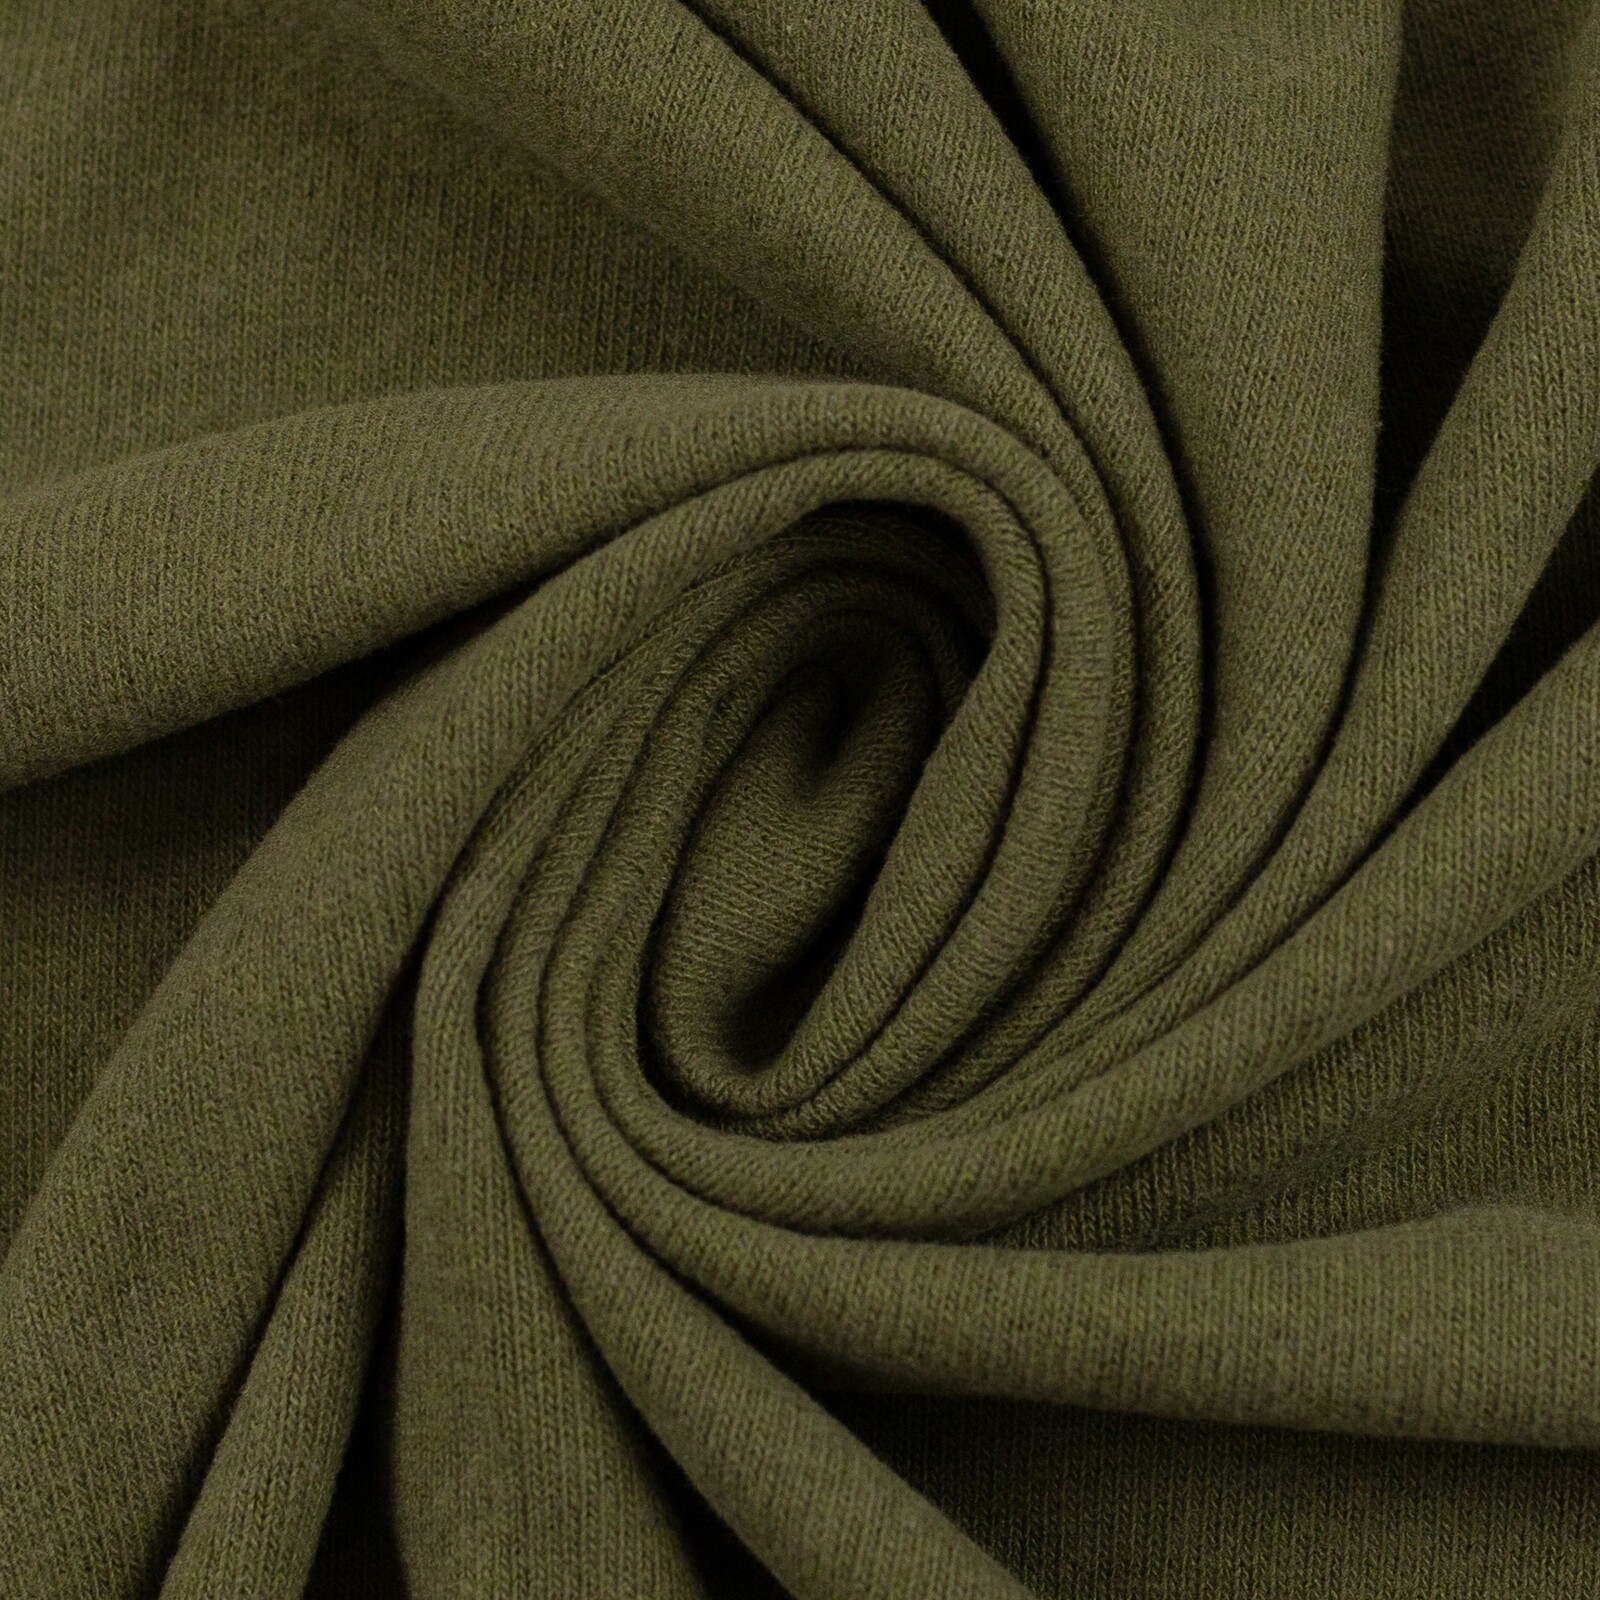 European Knitted Cotton, Khaki | Wattle Hill Fabrics